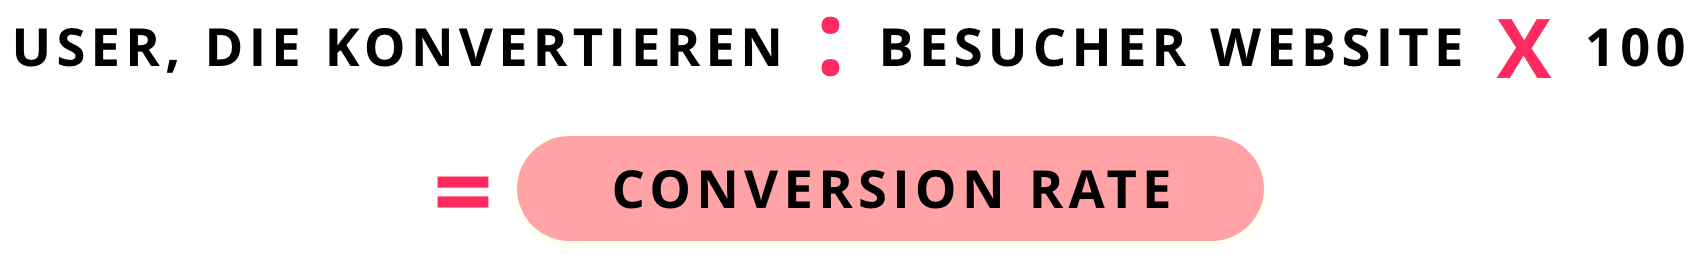 Website Conversion berechnen: User, die konvertieren : Besucher Webseite x 100 = Conversion Rate